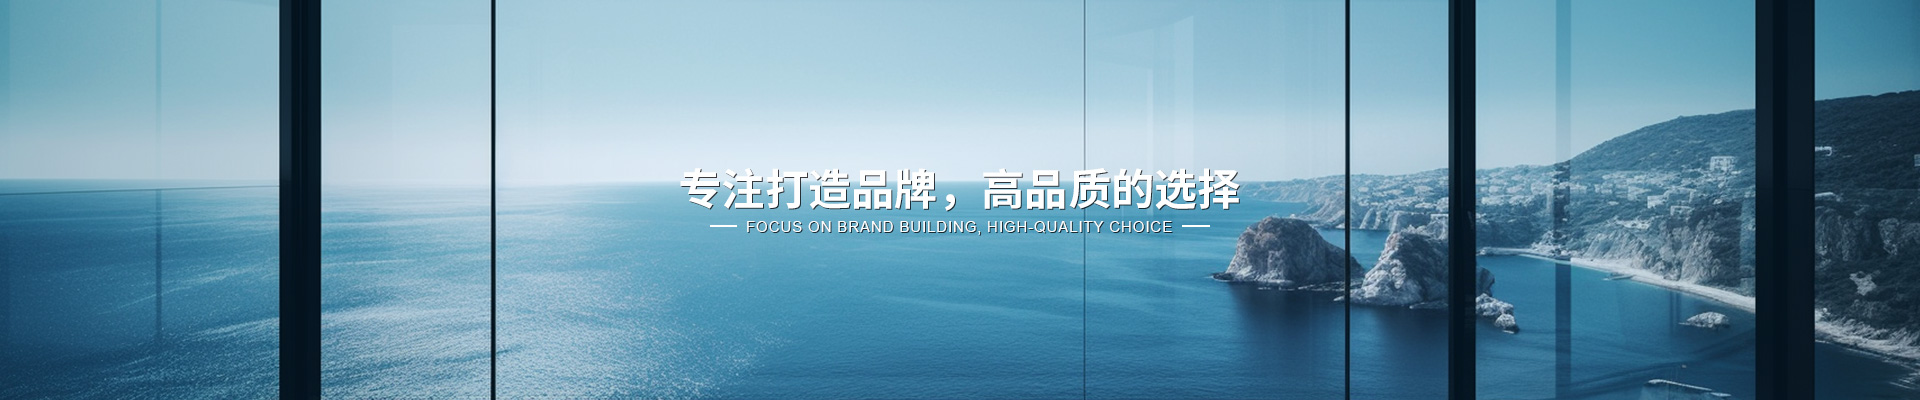 上海水仪科技有限公司公司介绍